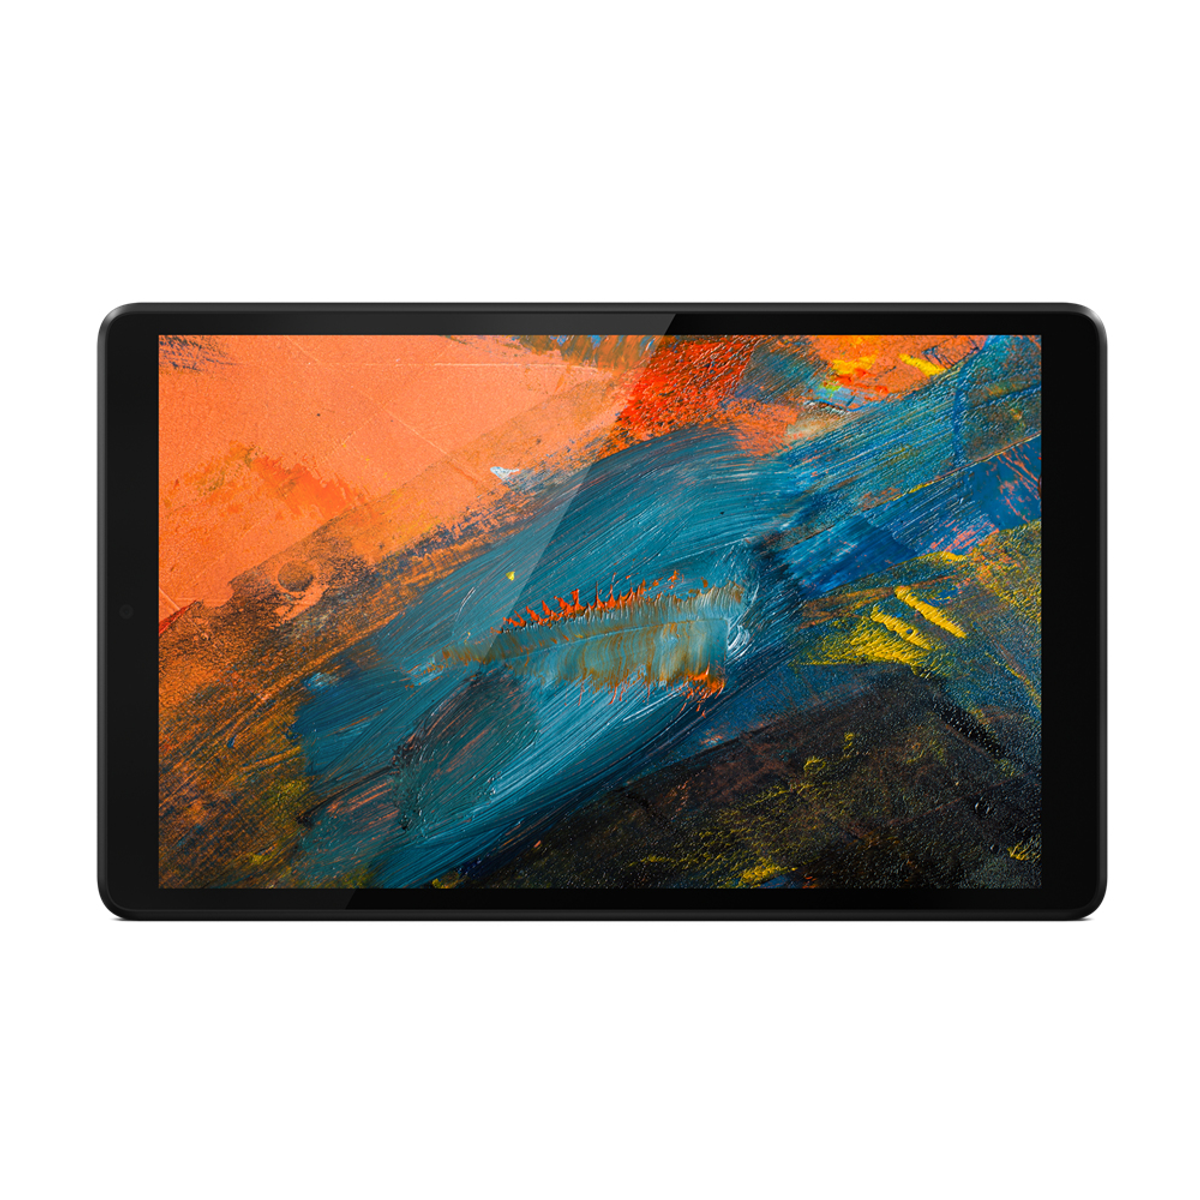 ZA5G0038SE, GB, 8 Grau Tablet, LENOVO Zoll, 32